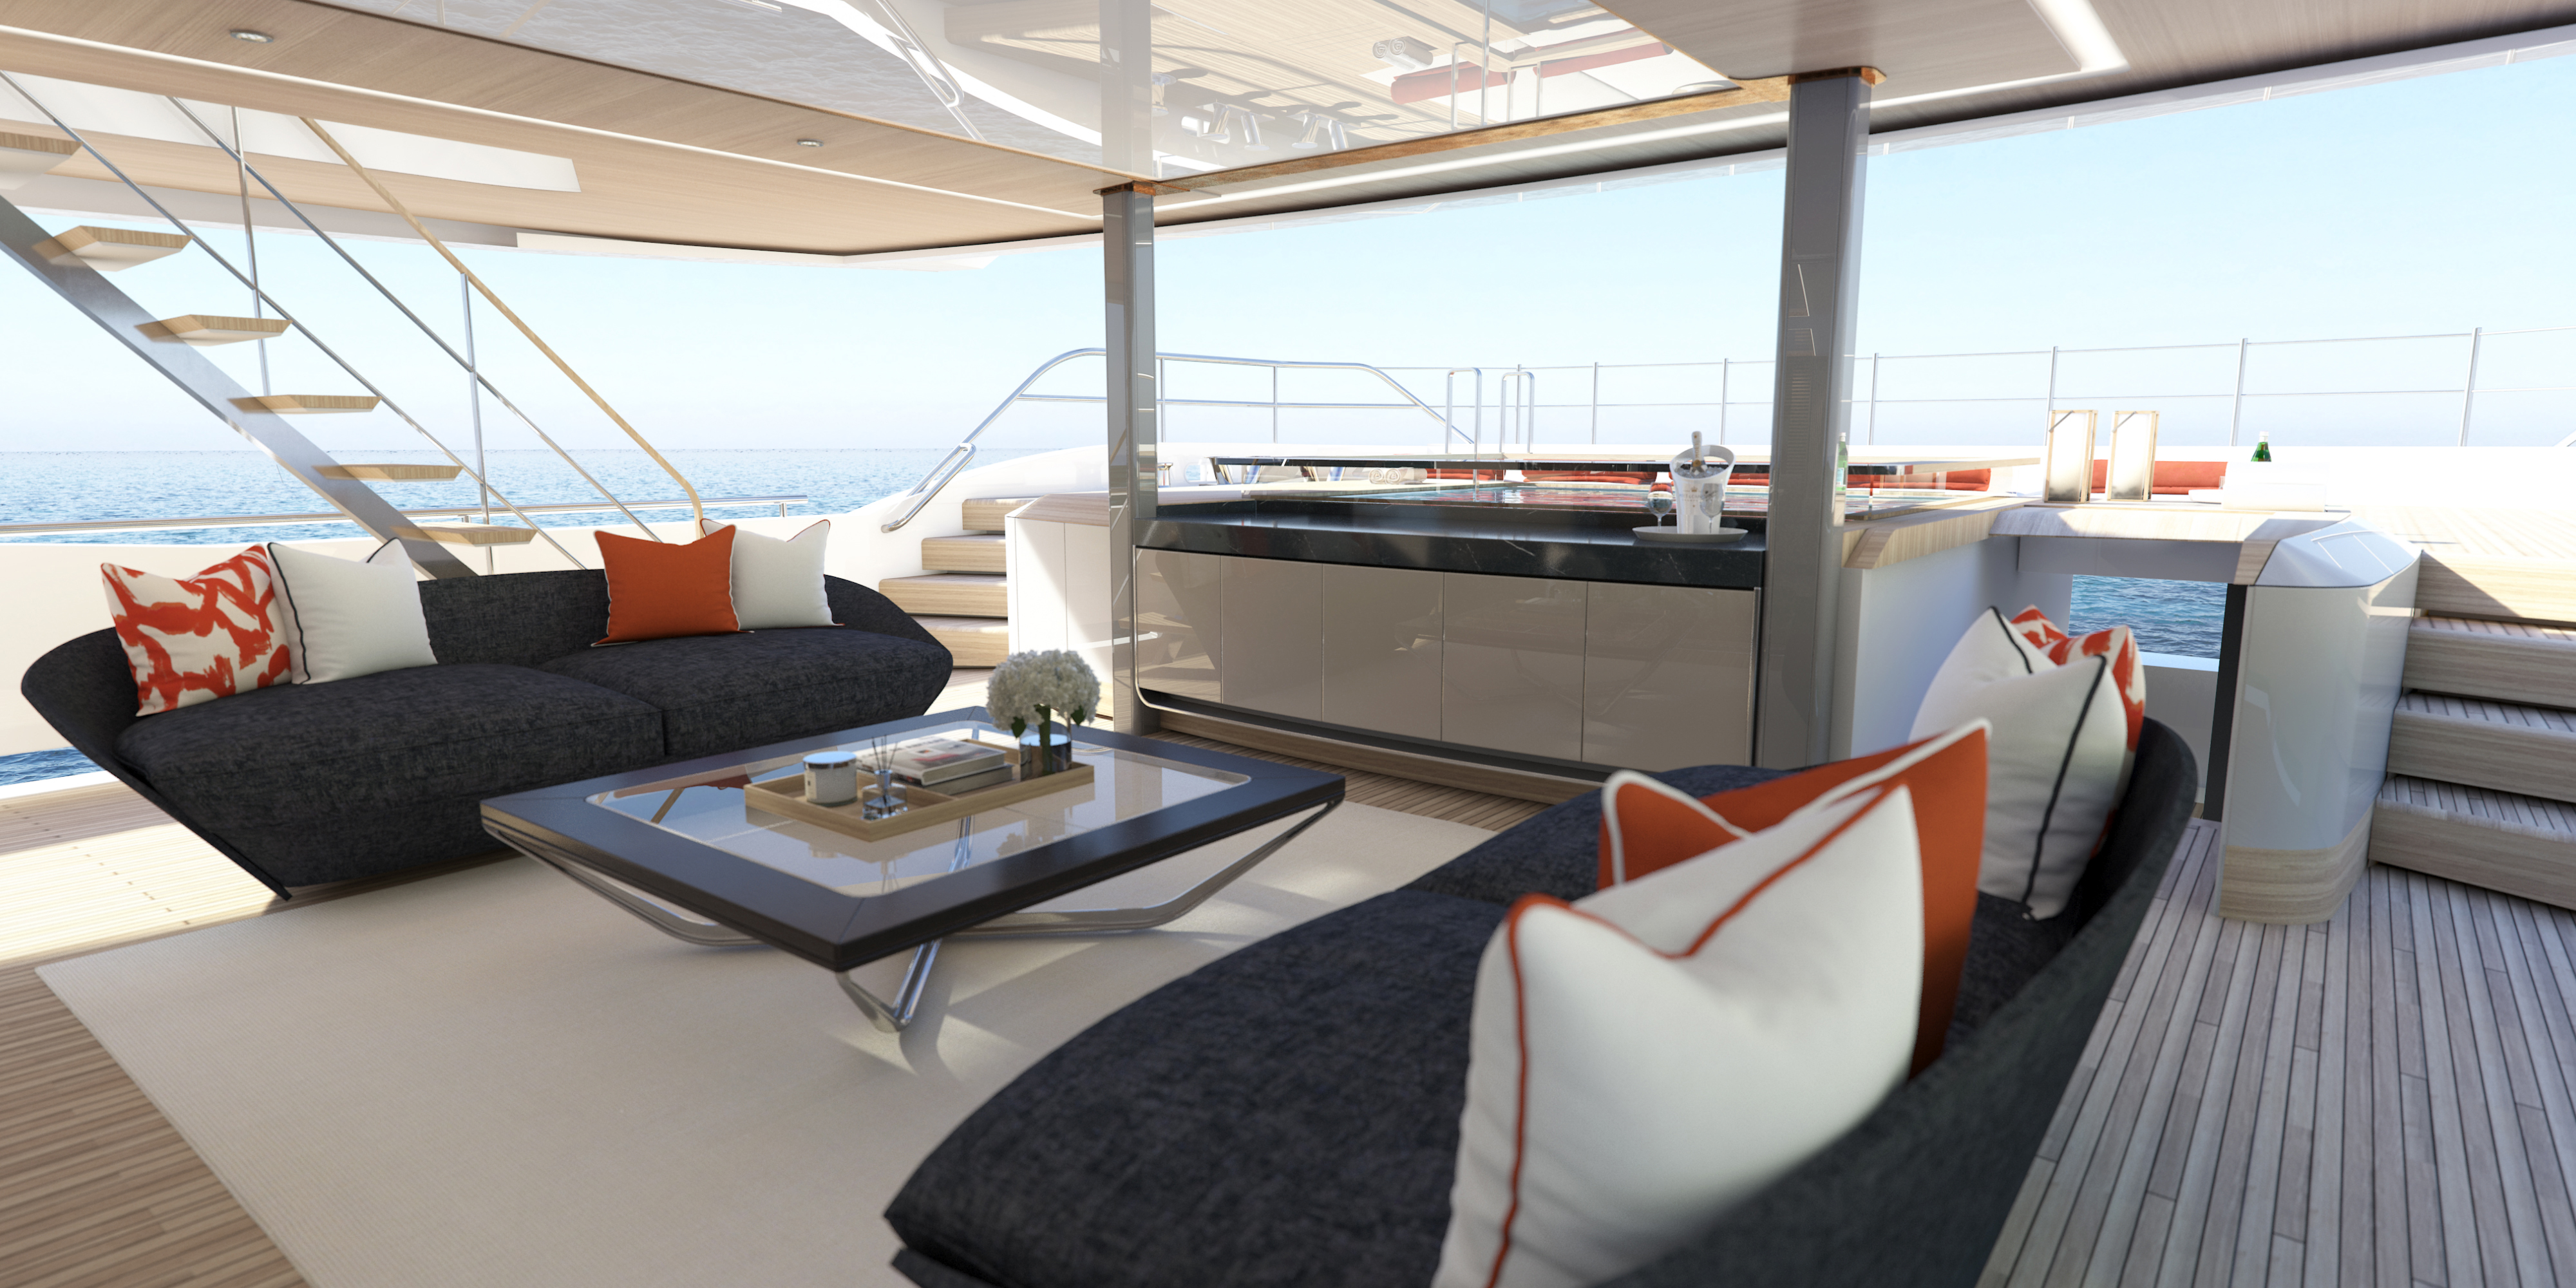 ÙØªÙØ¬Ø© Ø¨Ø­Ø« Ø§ÙØµÙØ± Ø¹Ù âªSunseeker 161 Yacht by Icon - Our new stunning flagship superyachtâ¬â